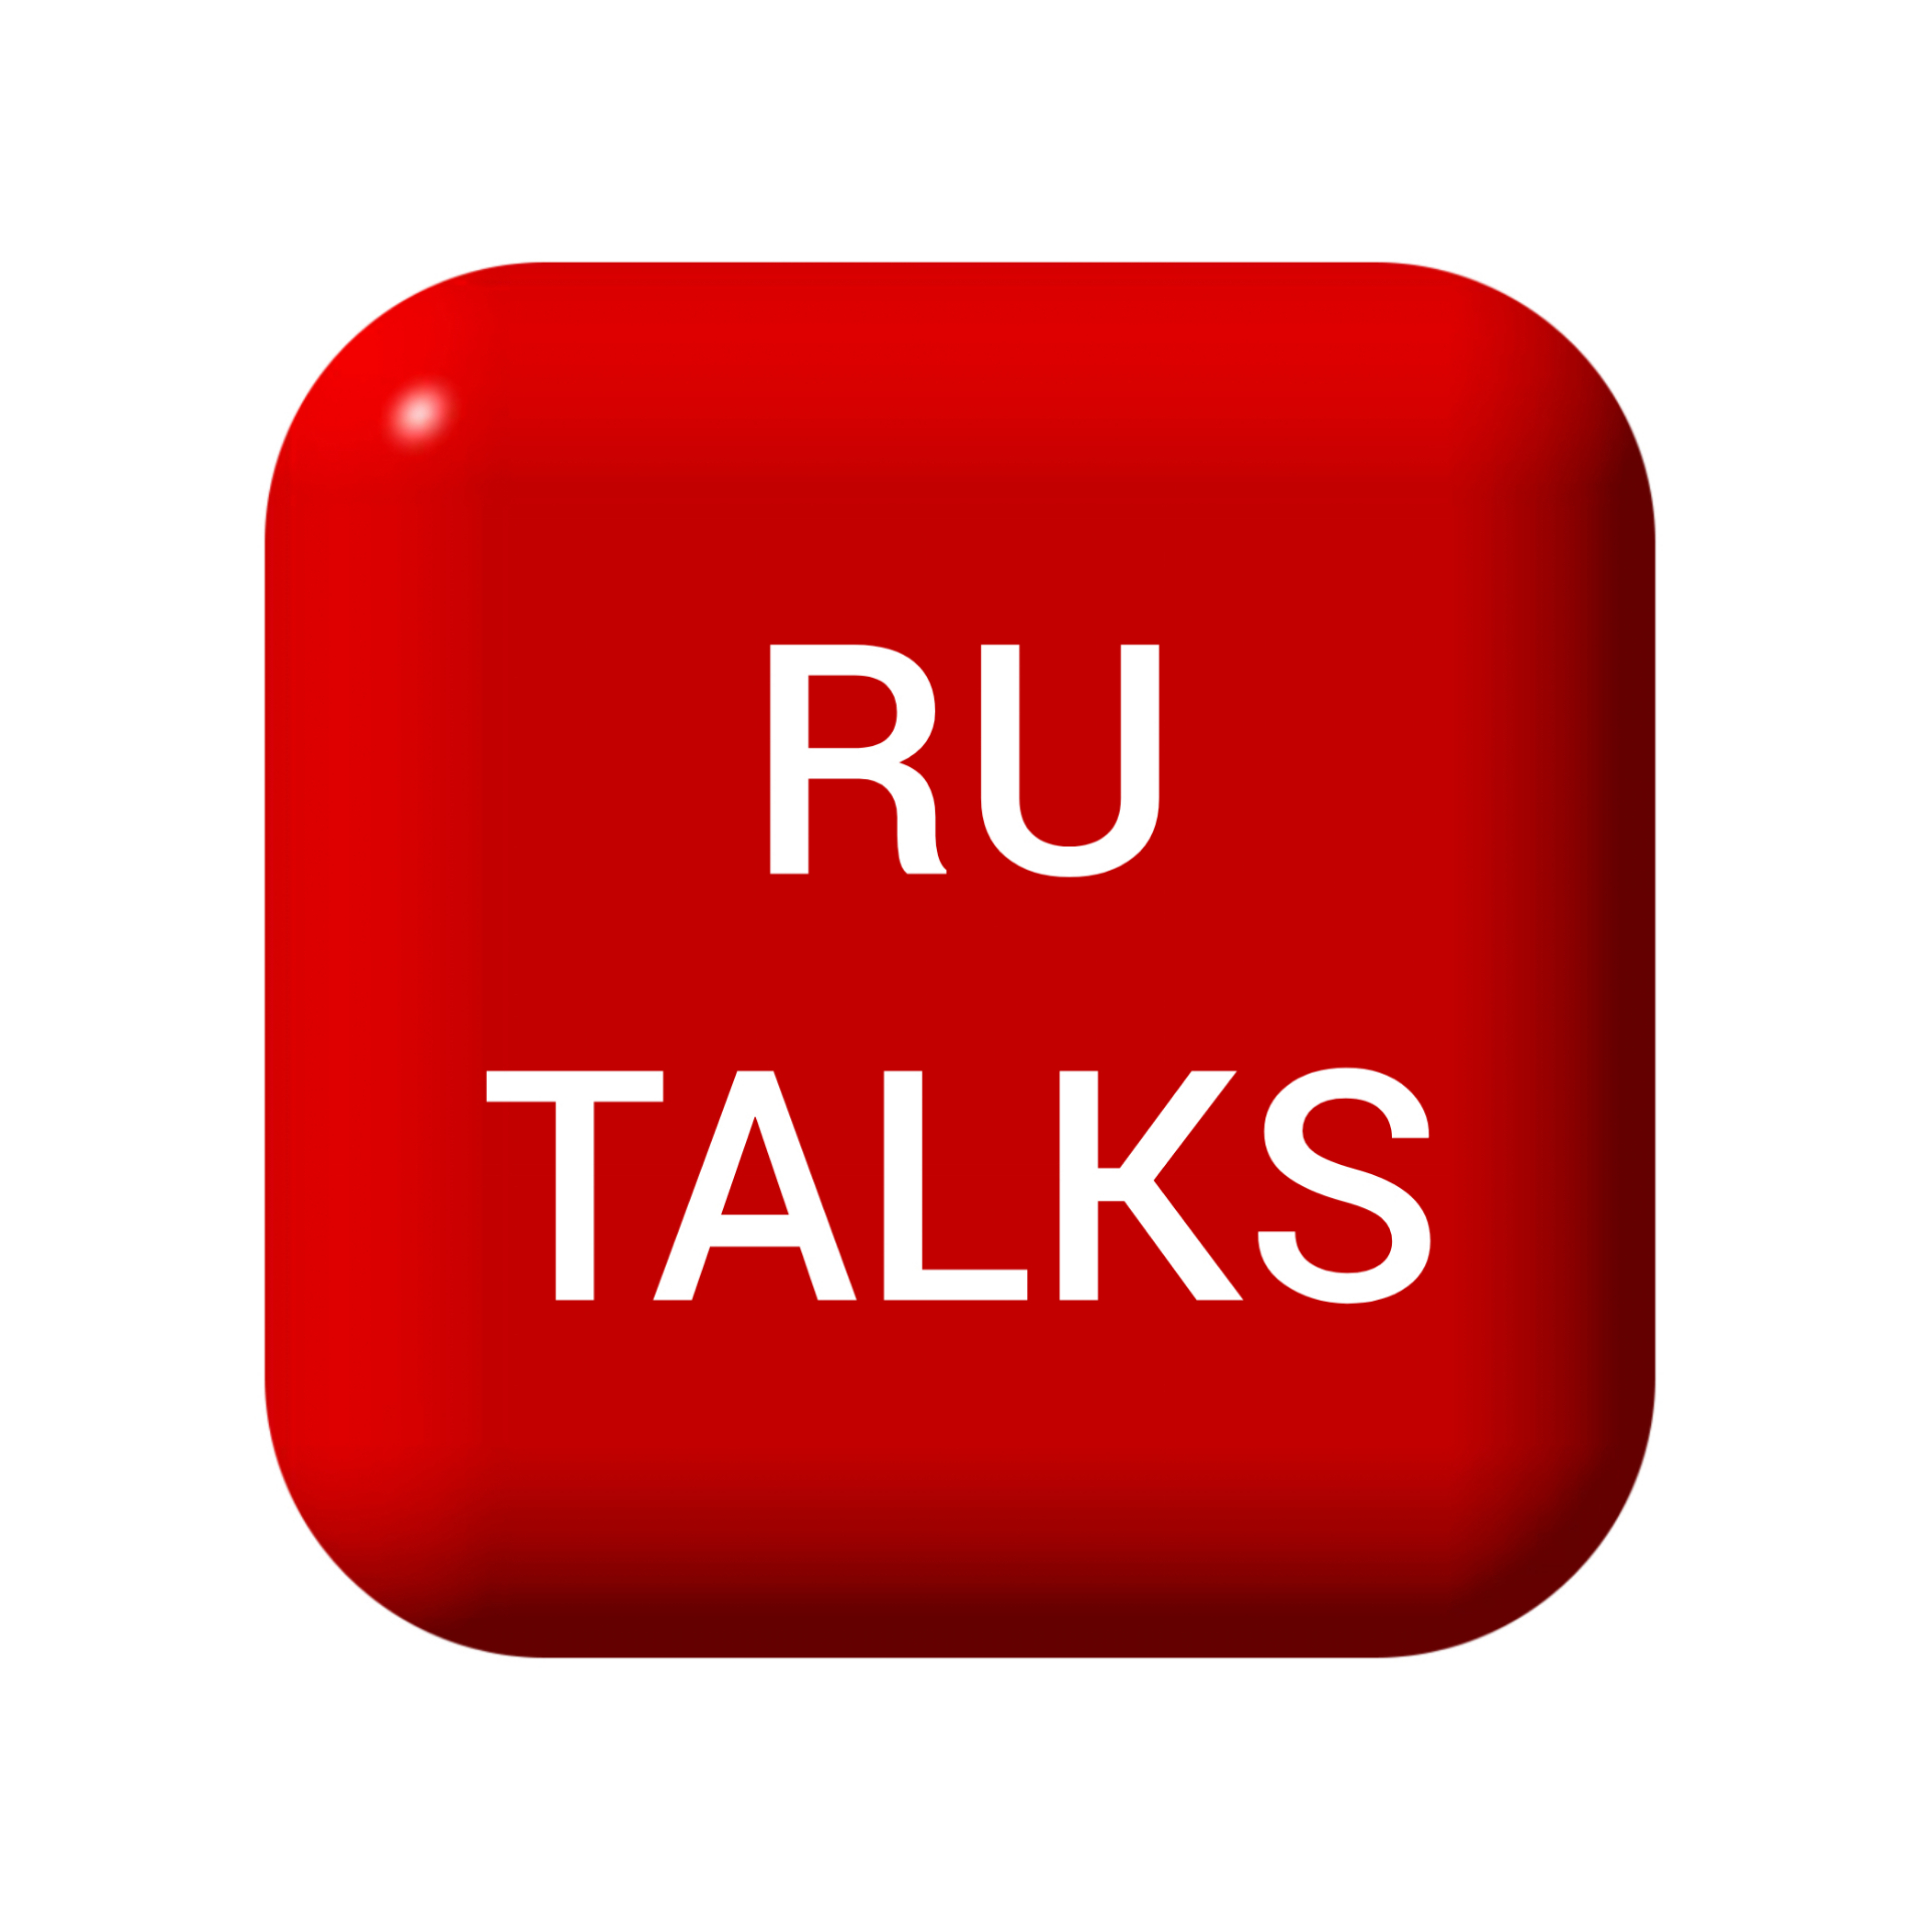 Ru talks. Ru talks лого. Говорит Россия ru talks. Yappy. Канал talk